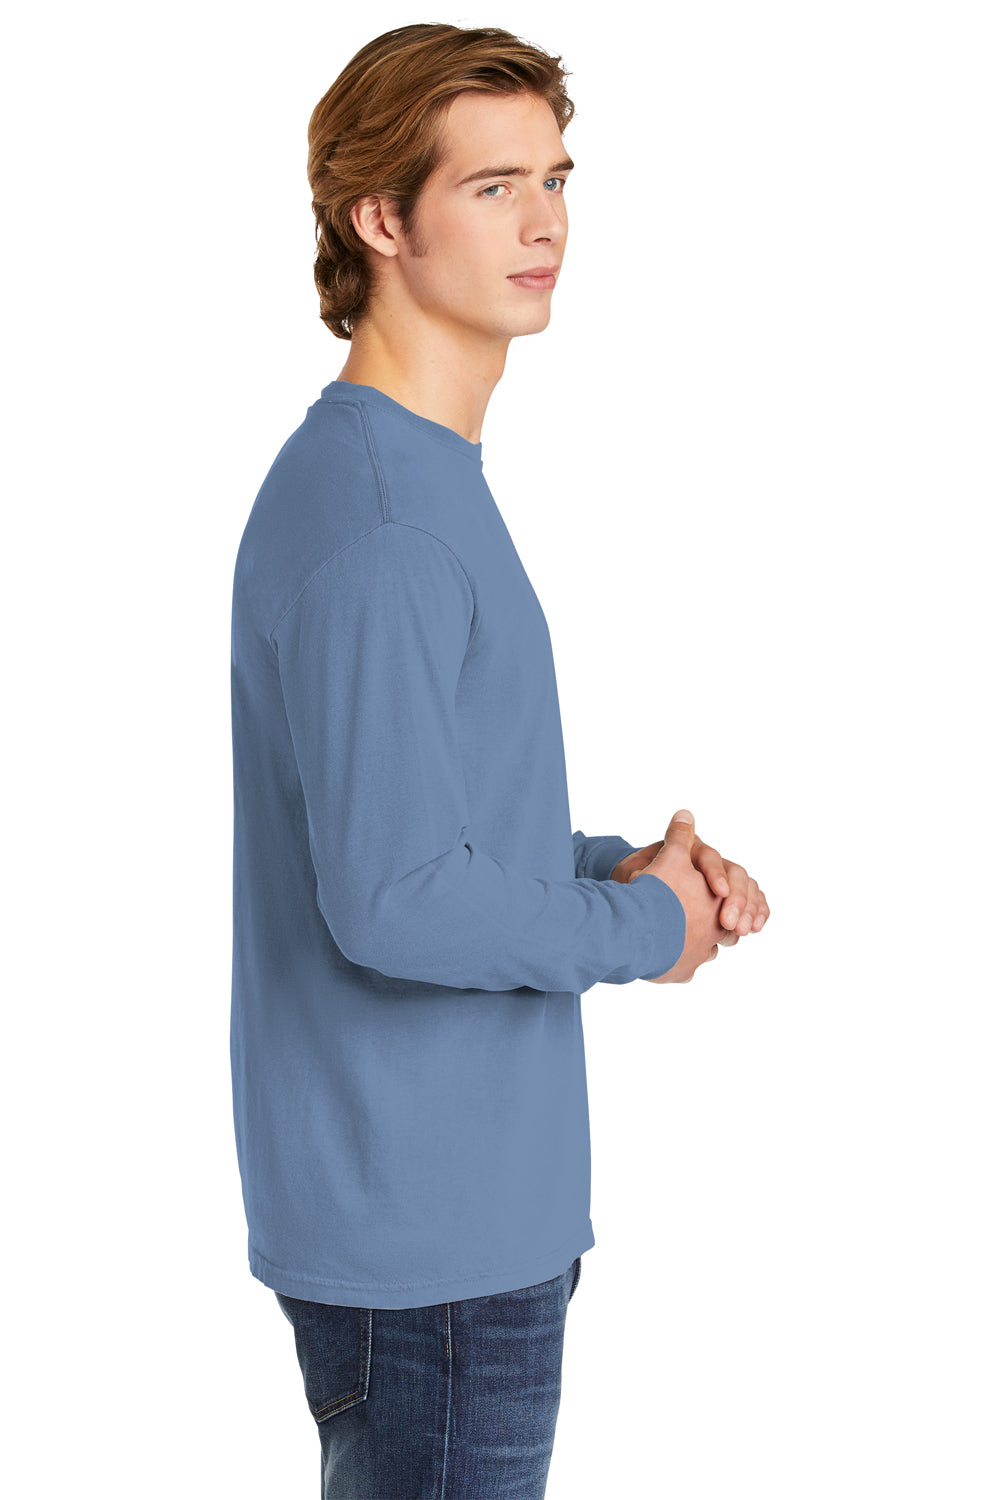 Comfort Colors 6014/C6014 Mens Long Sleeve Crewneck T-Shirt Washed Denim Blue Side